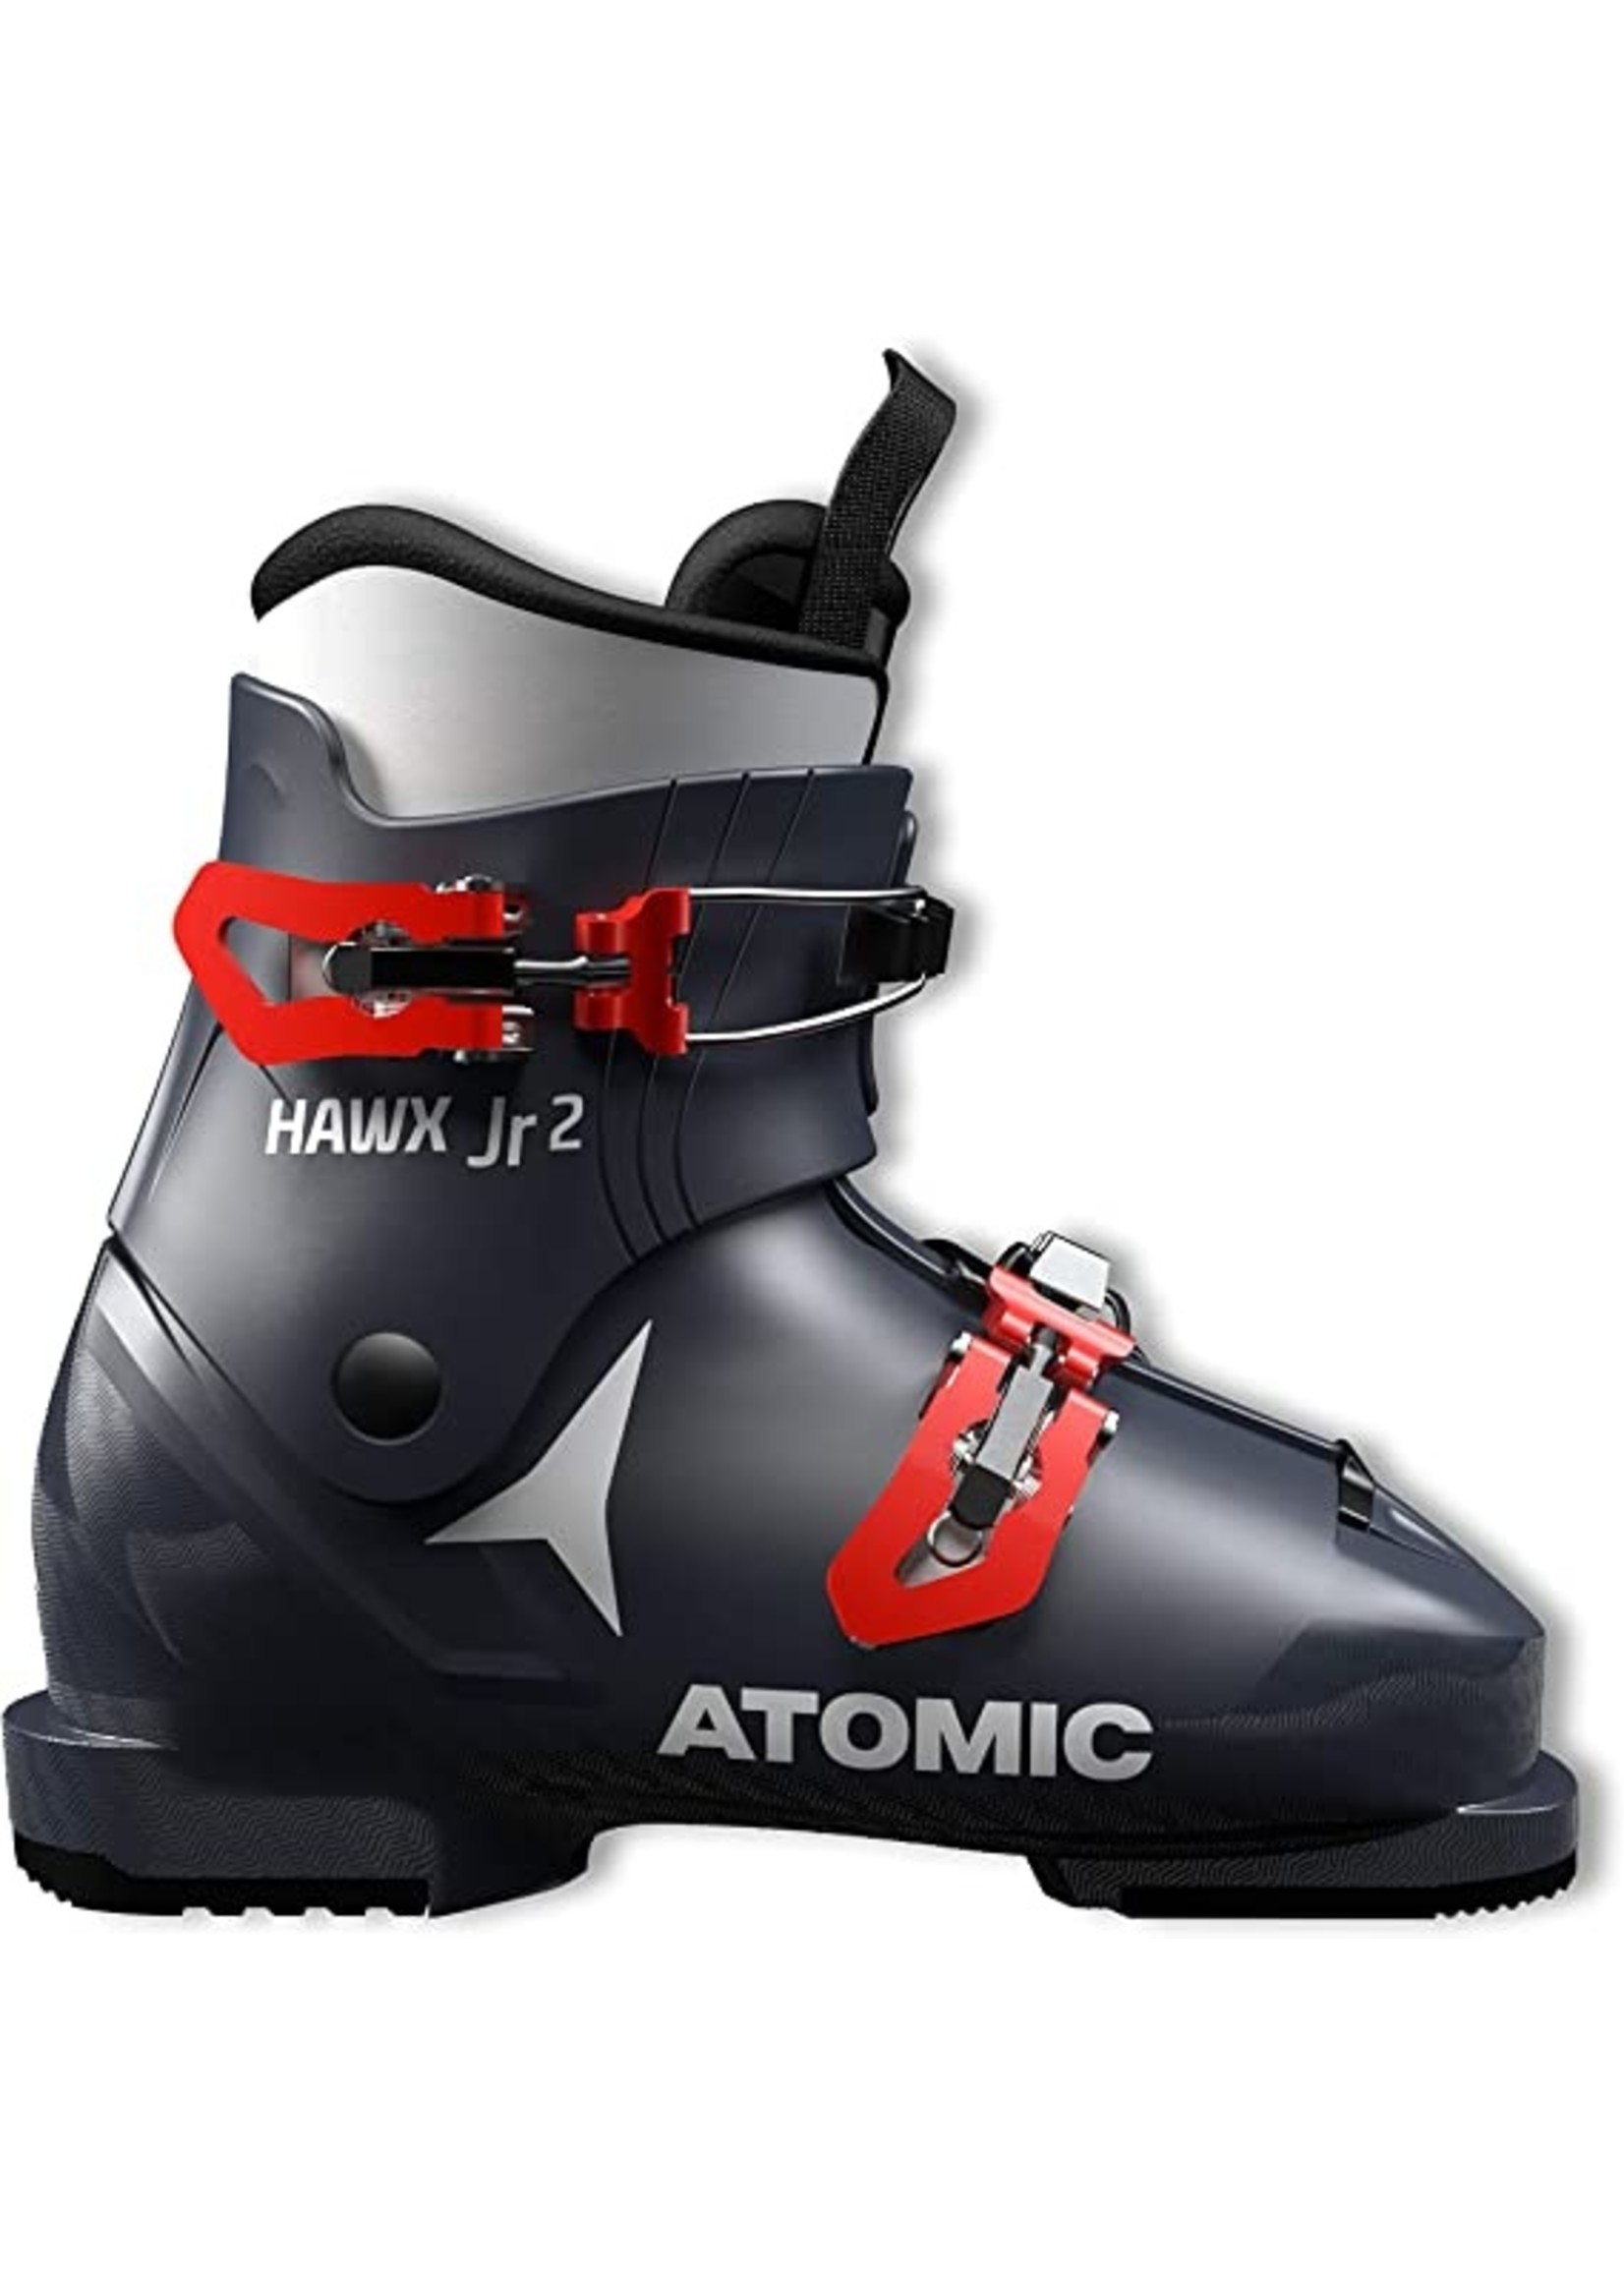 Atomic Junior boot Hawx 2